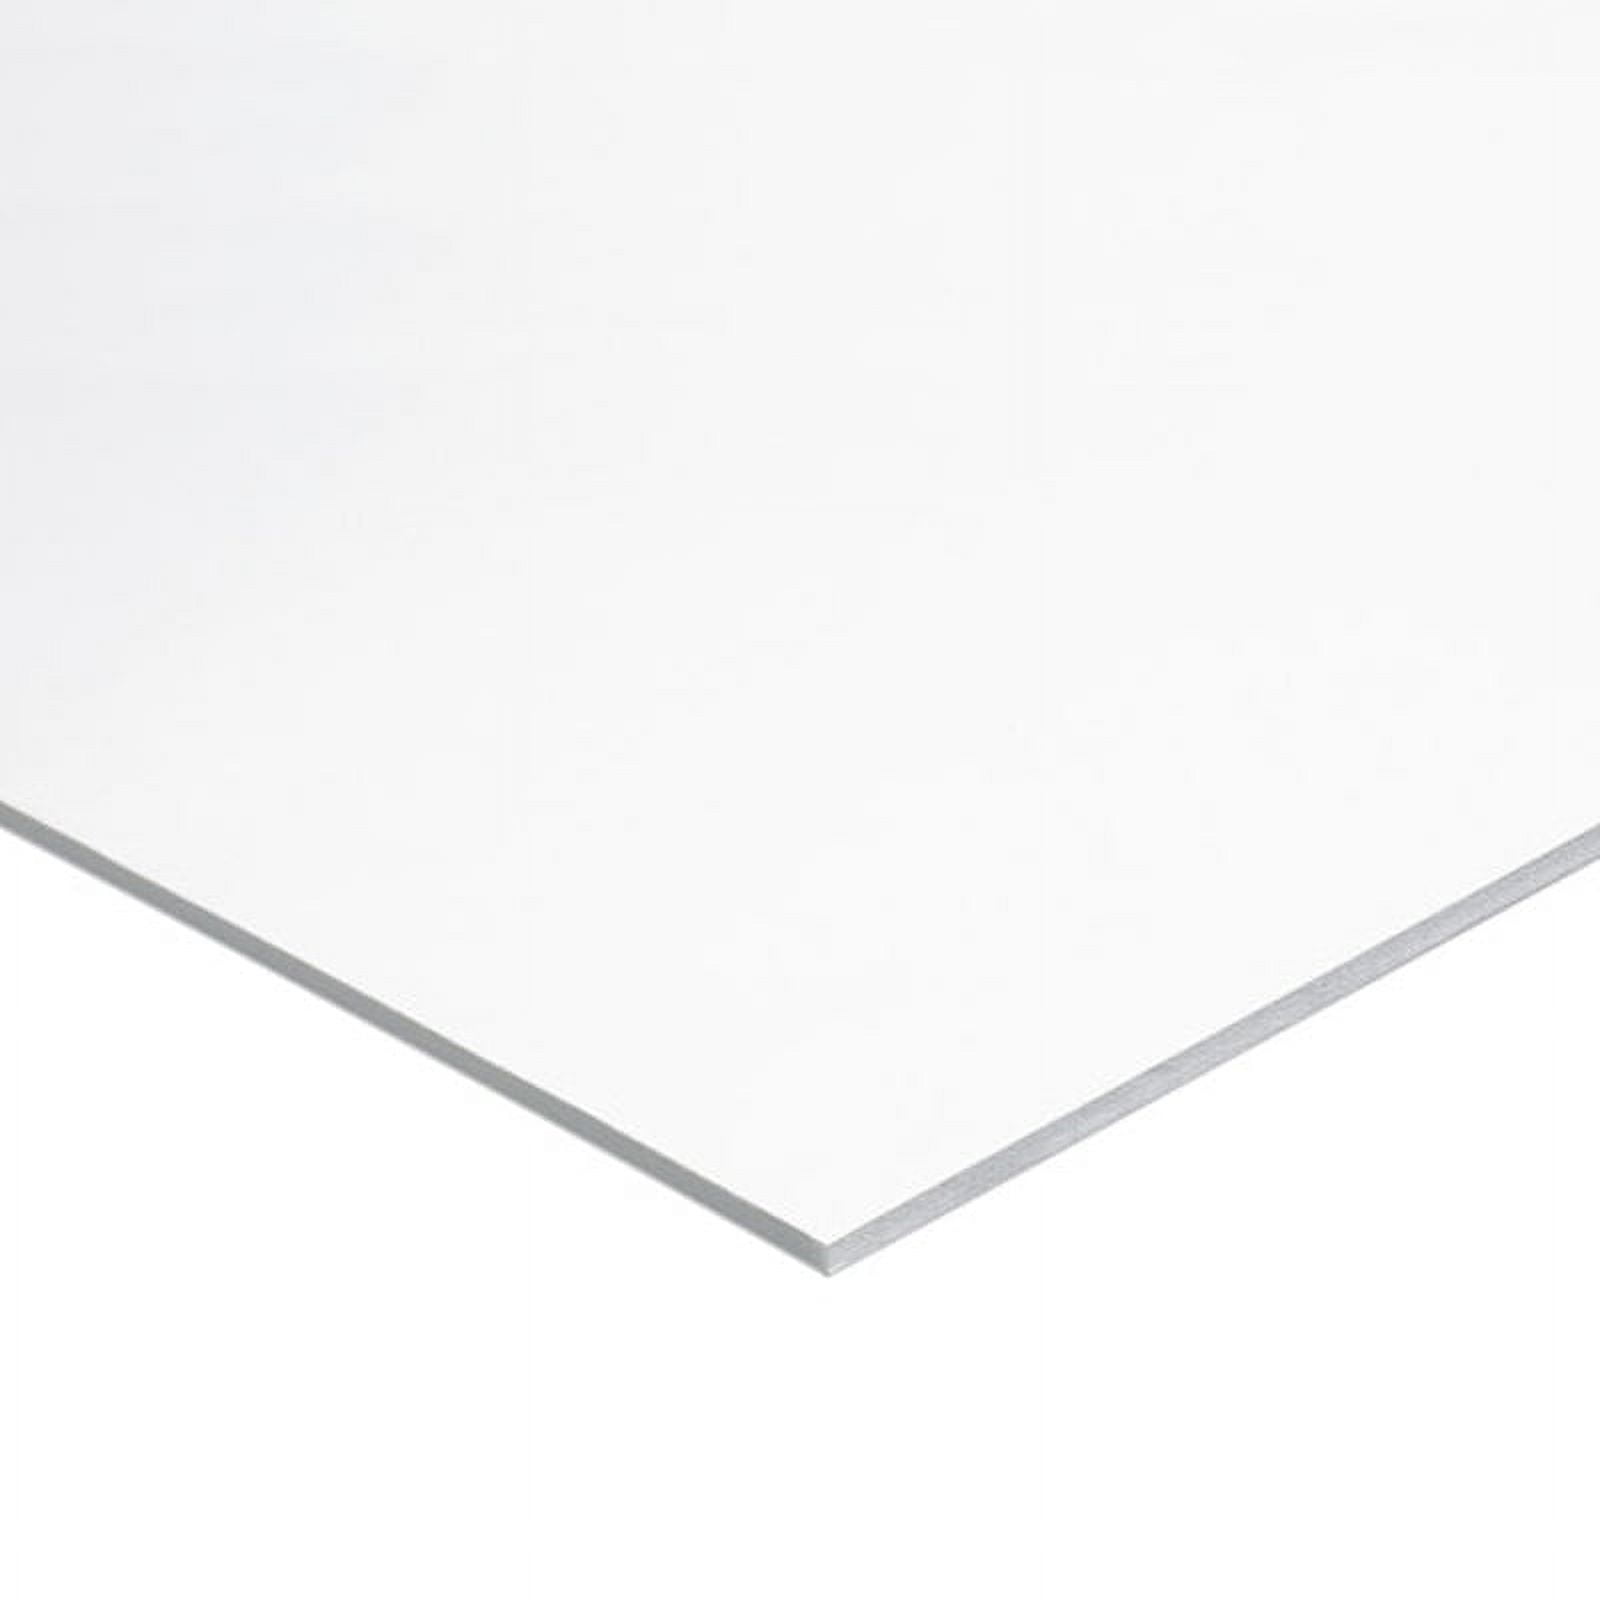 White Foam Board - 16 x 20 x 3/16, Pkg of 3 Sheets